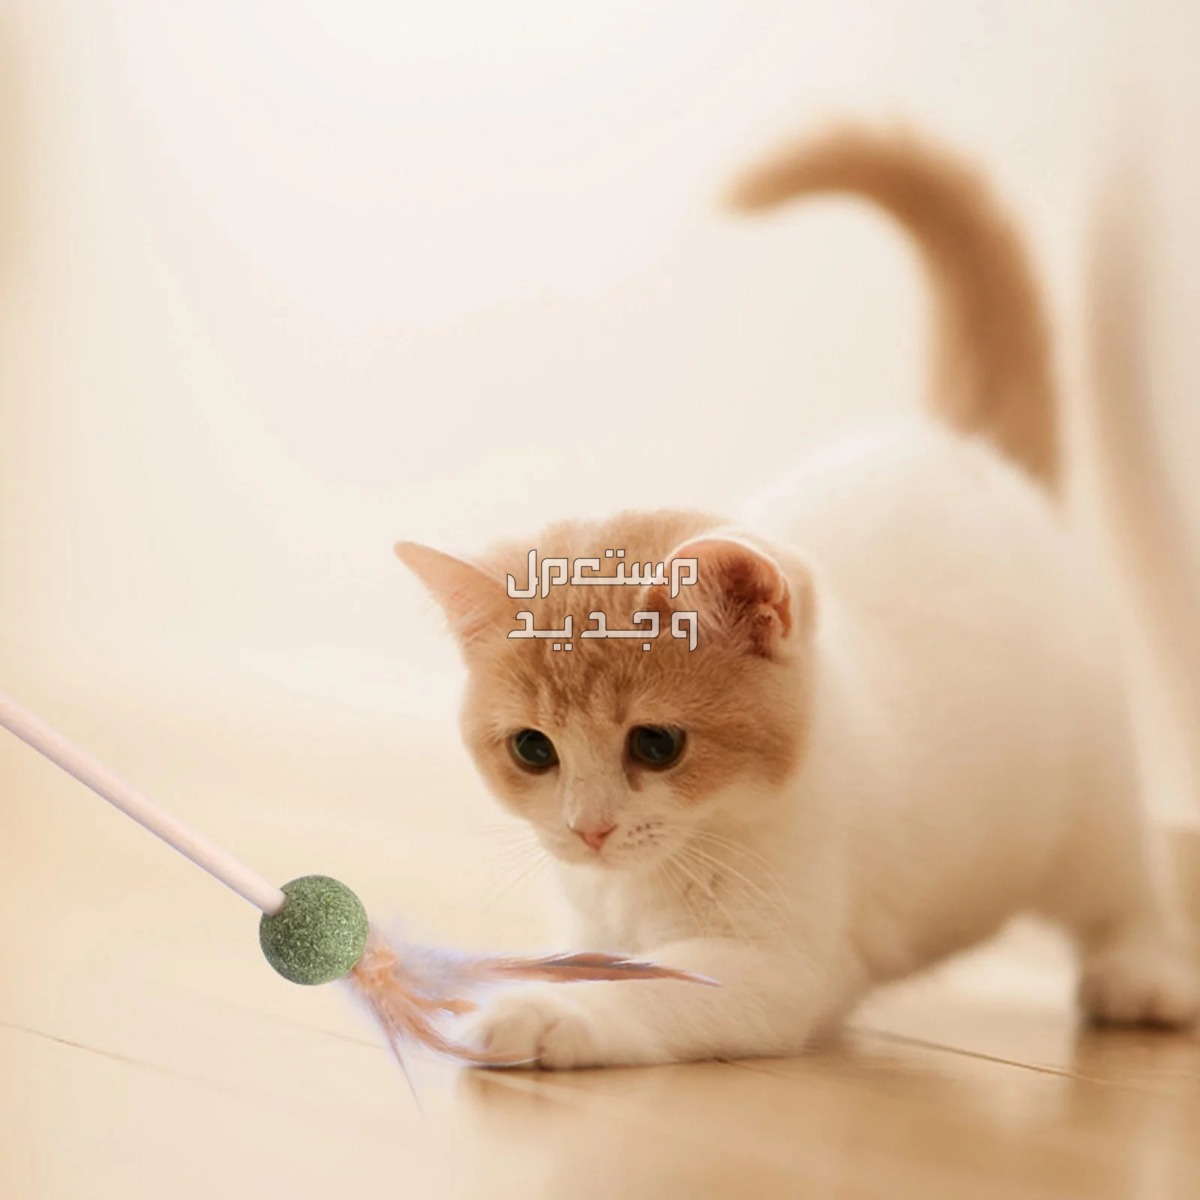 لمحبي القطط - تعرف على أفضل العاب قطط متحركة في الجزائر قطة تلعب بالريشة